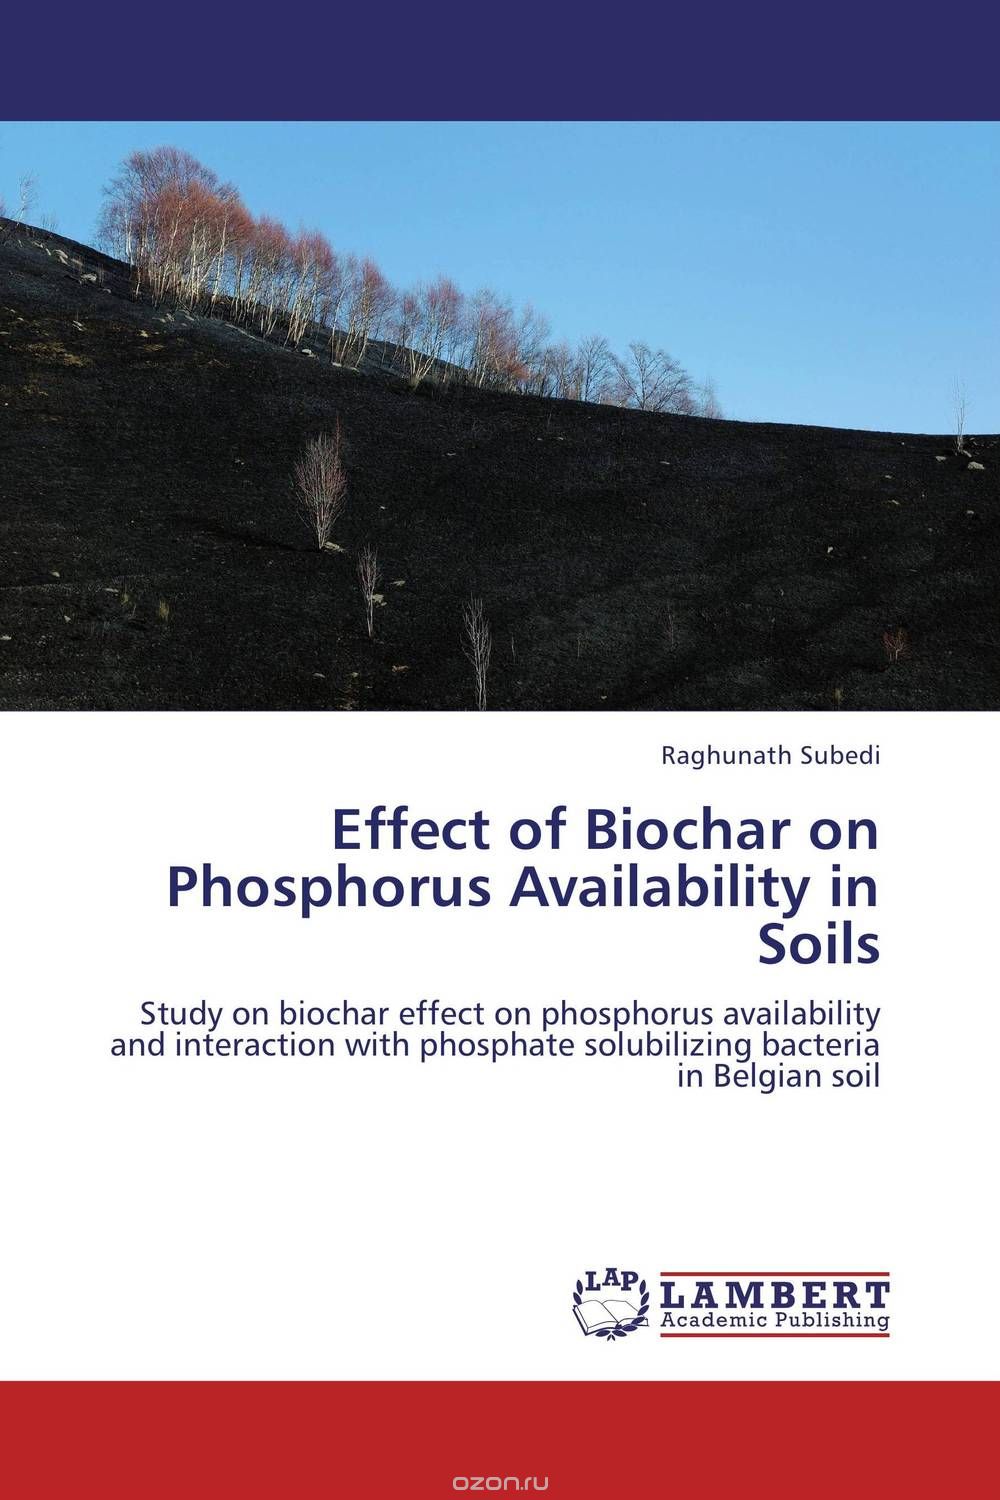 Скачать книгу "Effect of Biochar on Phosphorus Availability in Soils"